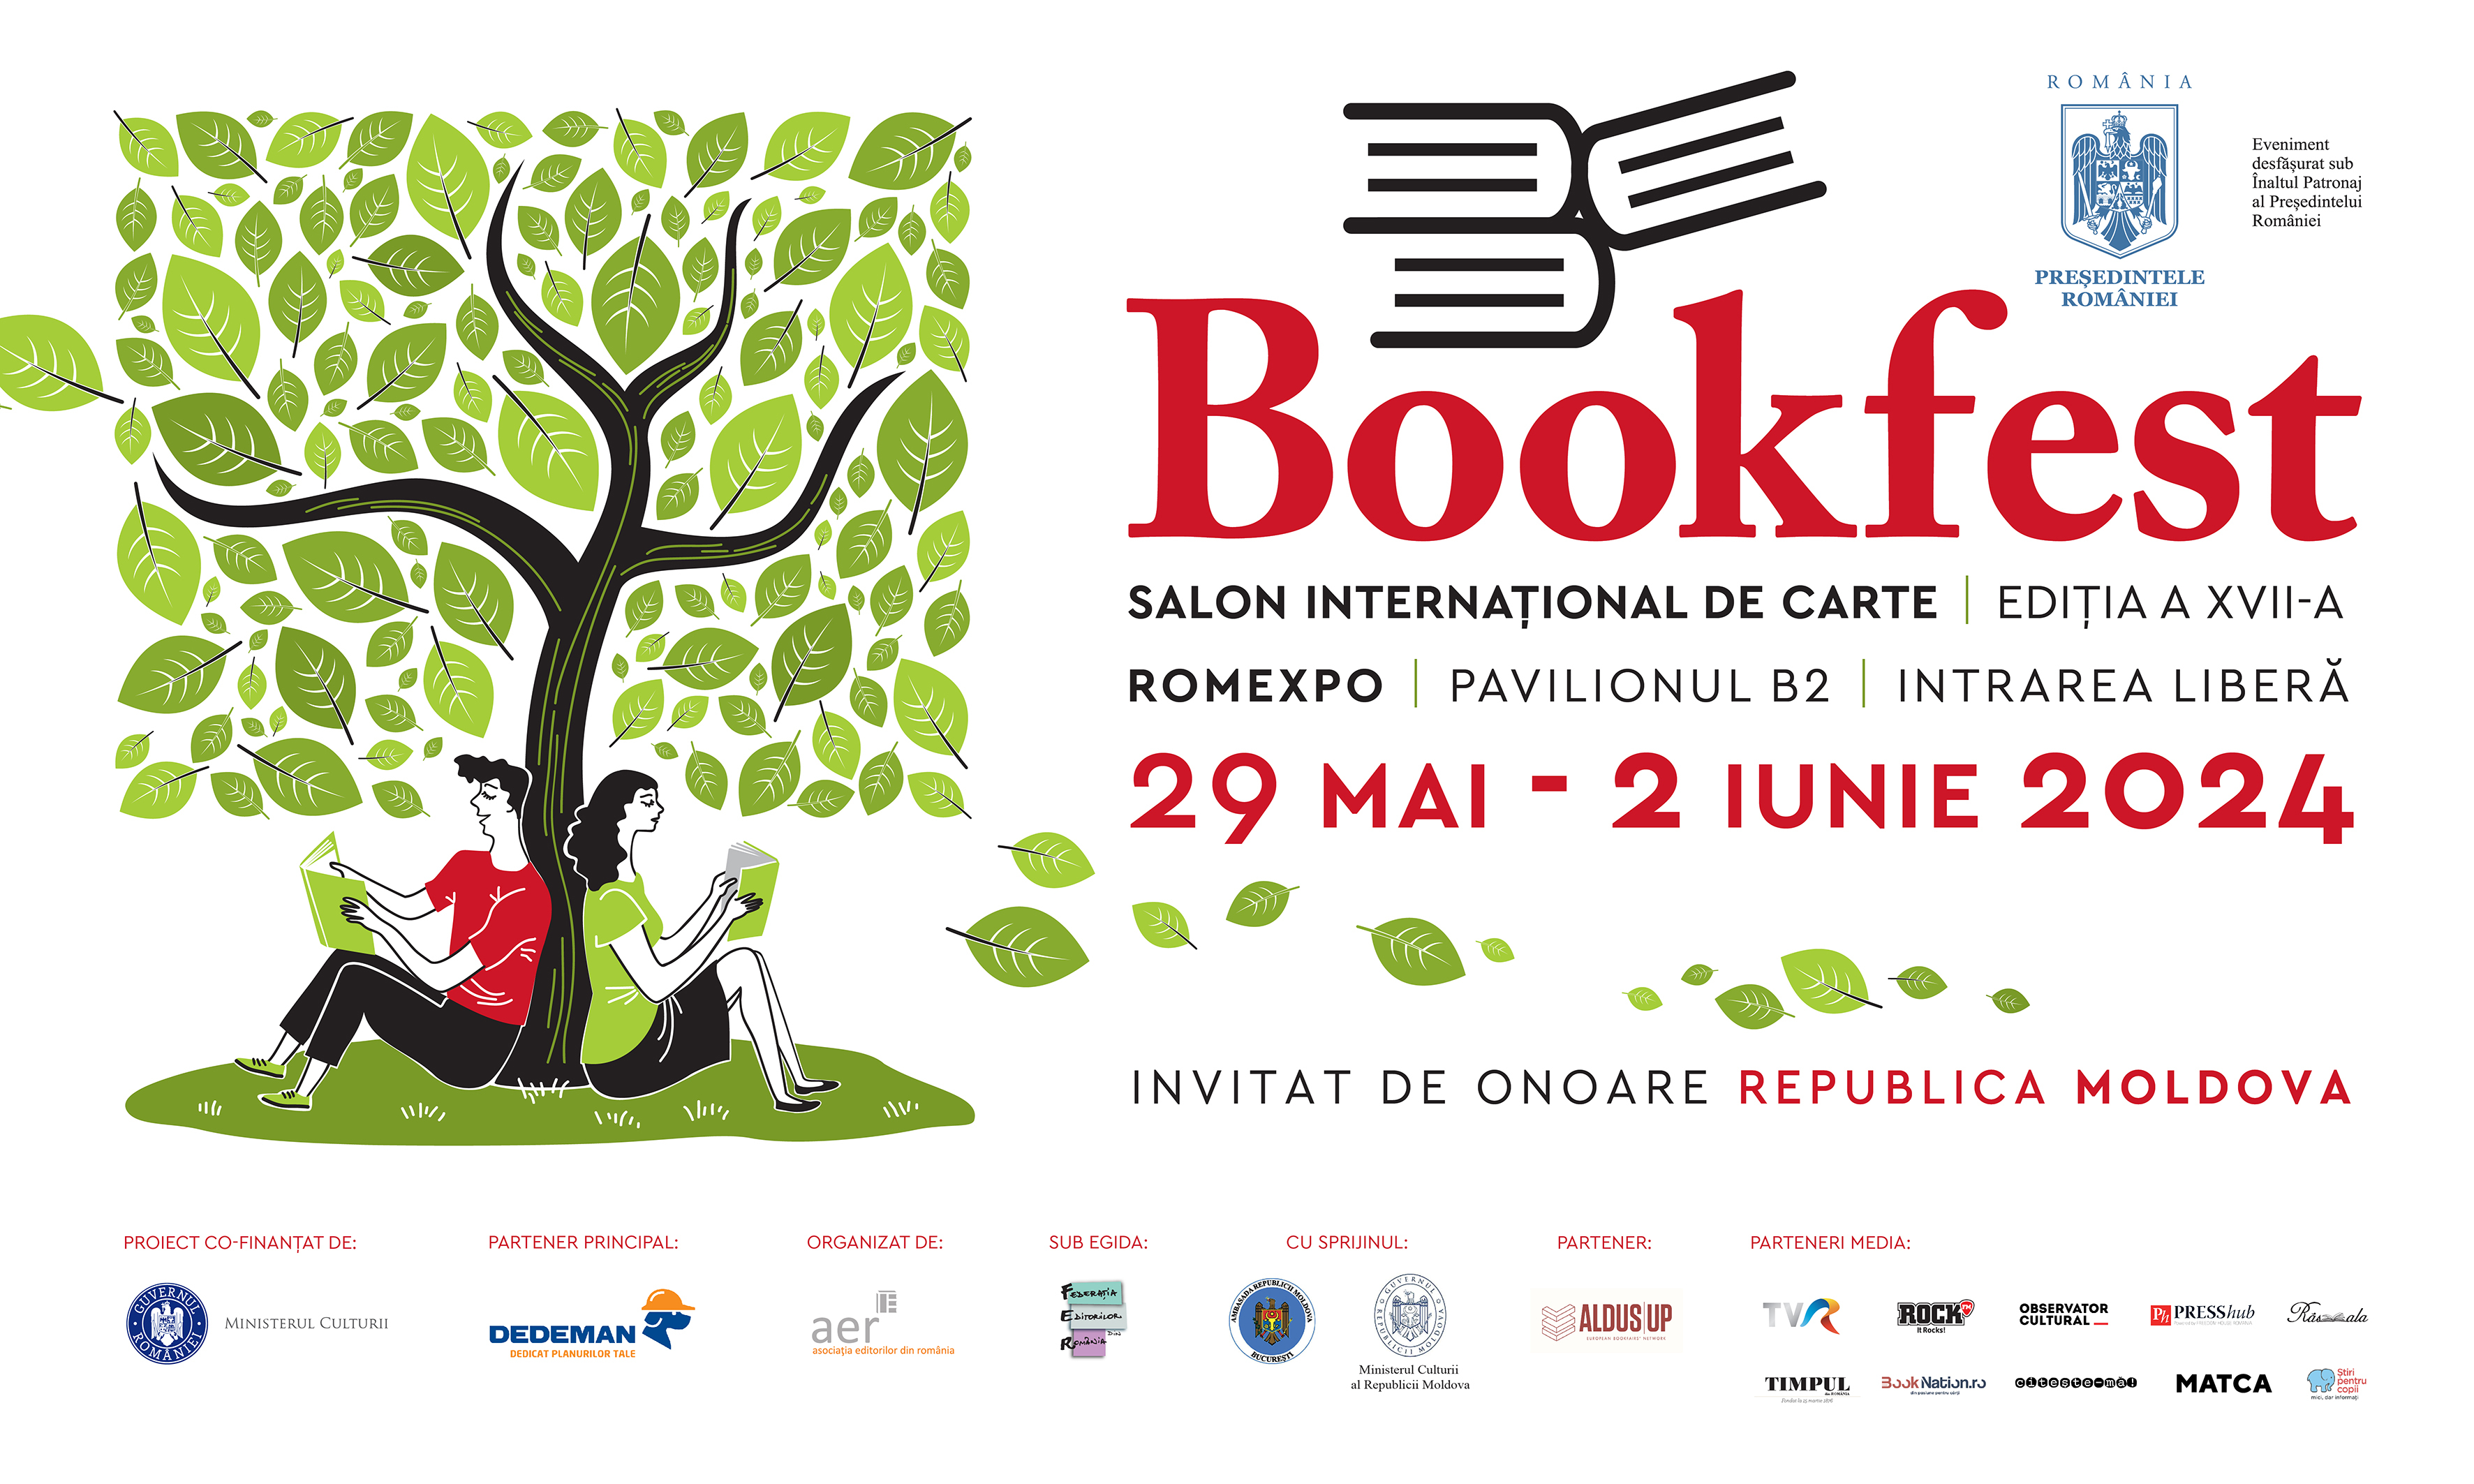 Salonul Internațional de Carte Bookfest își deschide porțile pe 29 mai